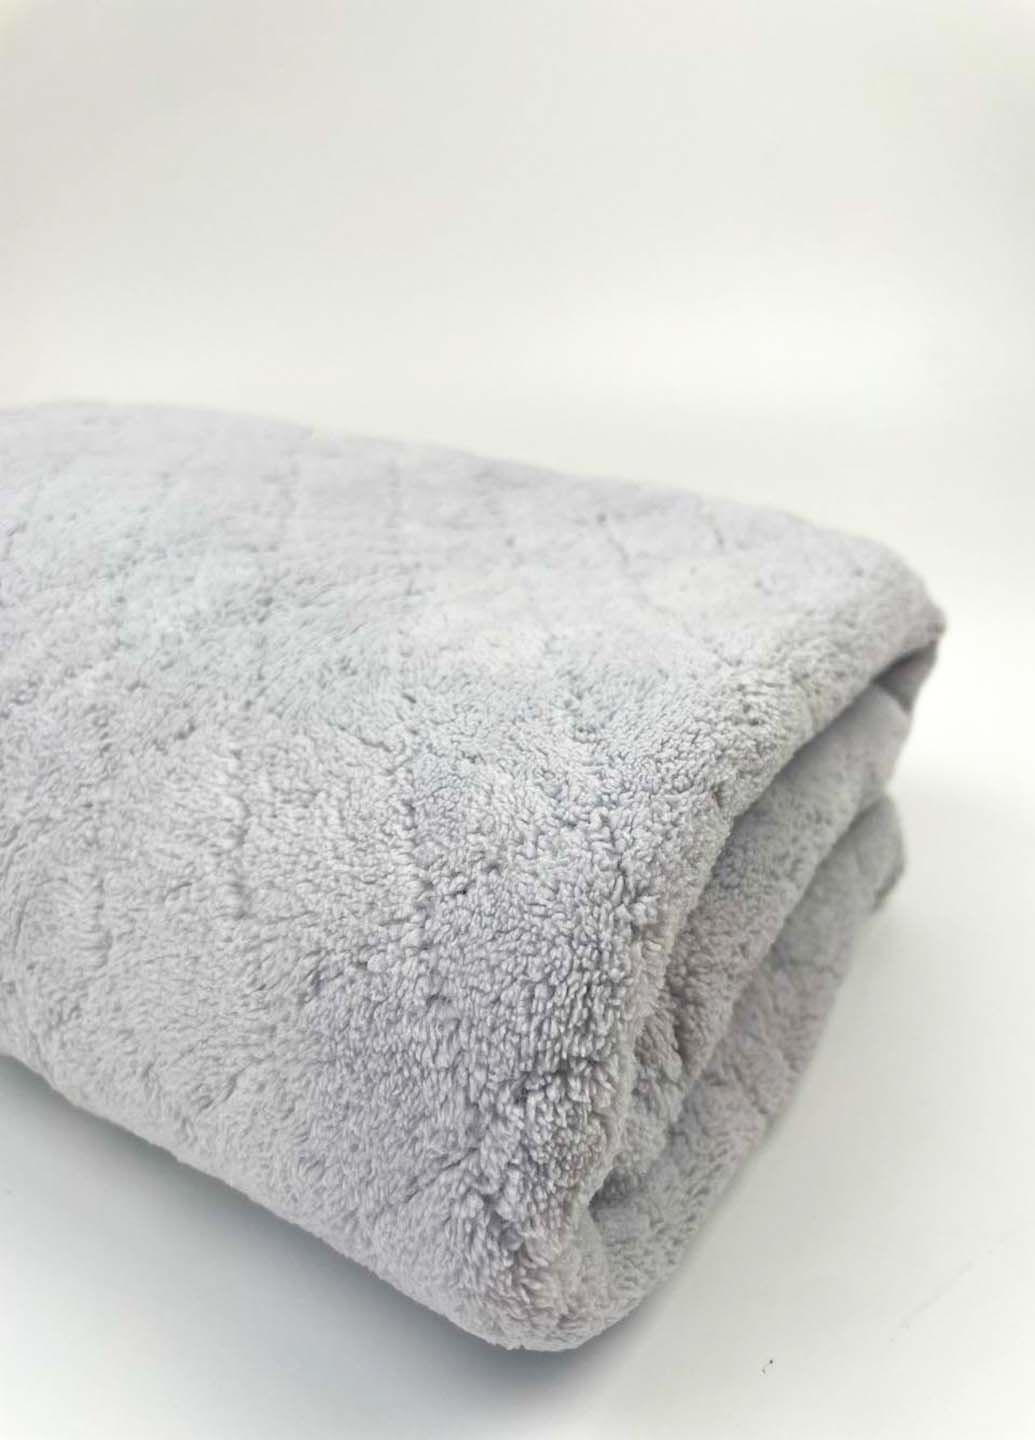 Homedec полотенце лицевое микрофибра 100х50 см однотонный светло-серый производство - Турция